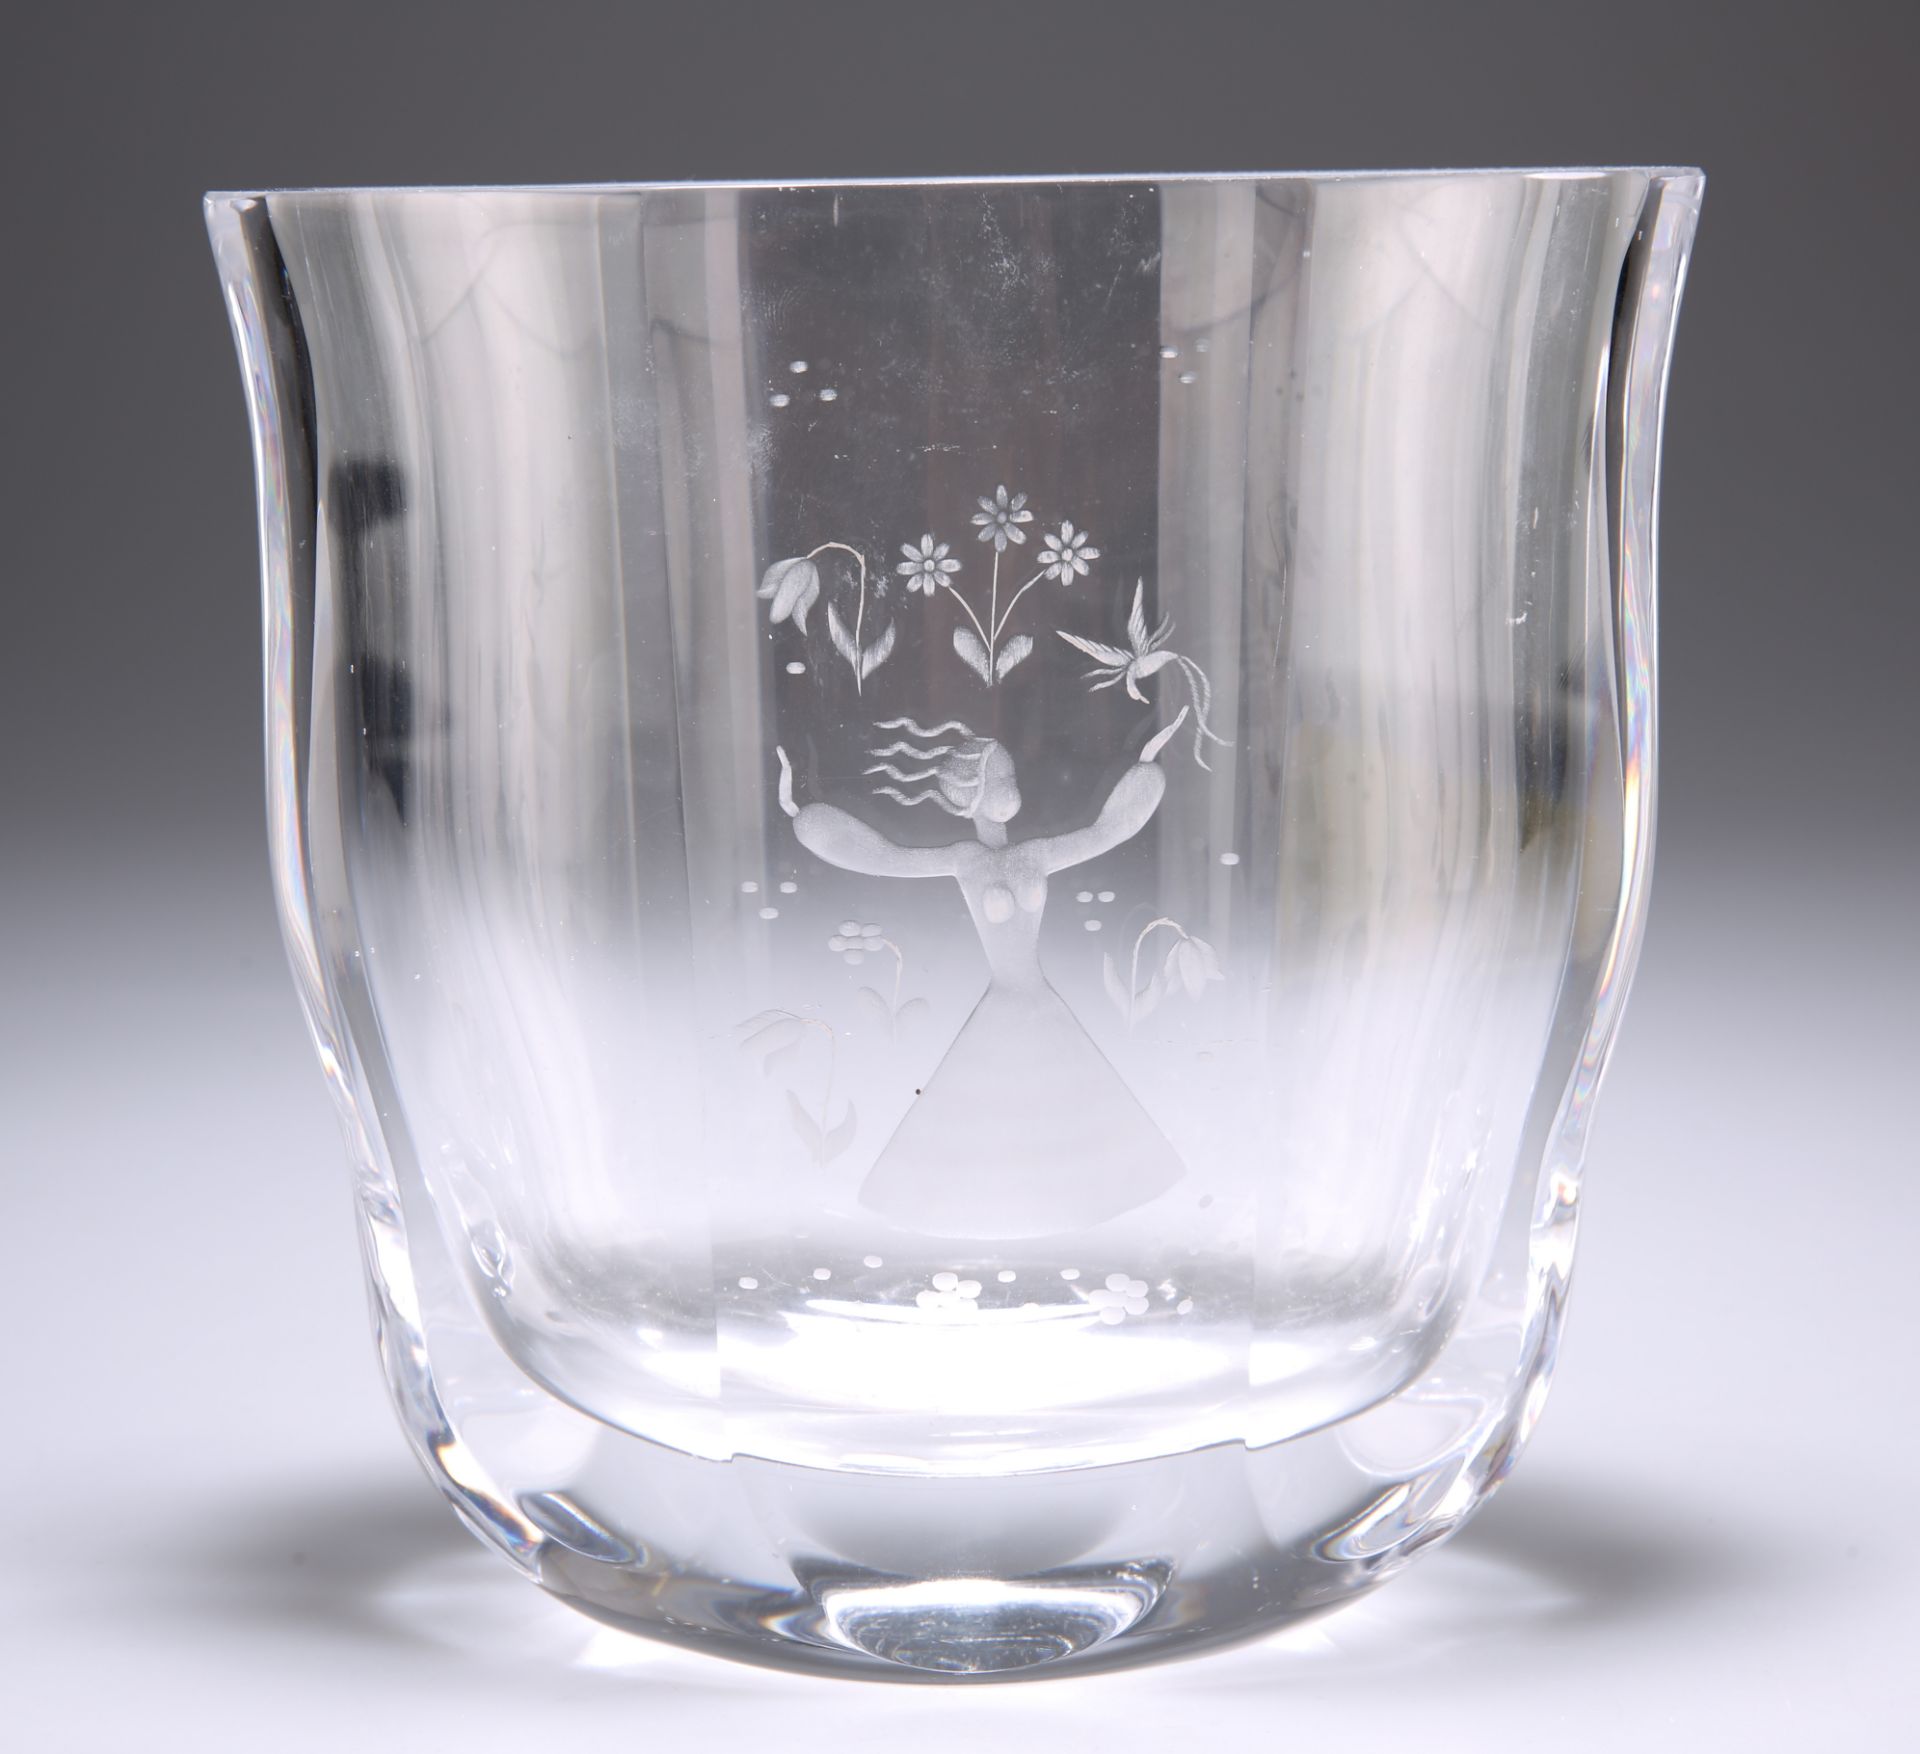 AN ORREFORS GLASS VASE, DESIGNED BY EDVIN OHRSTROM